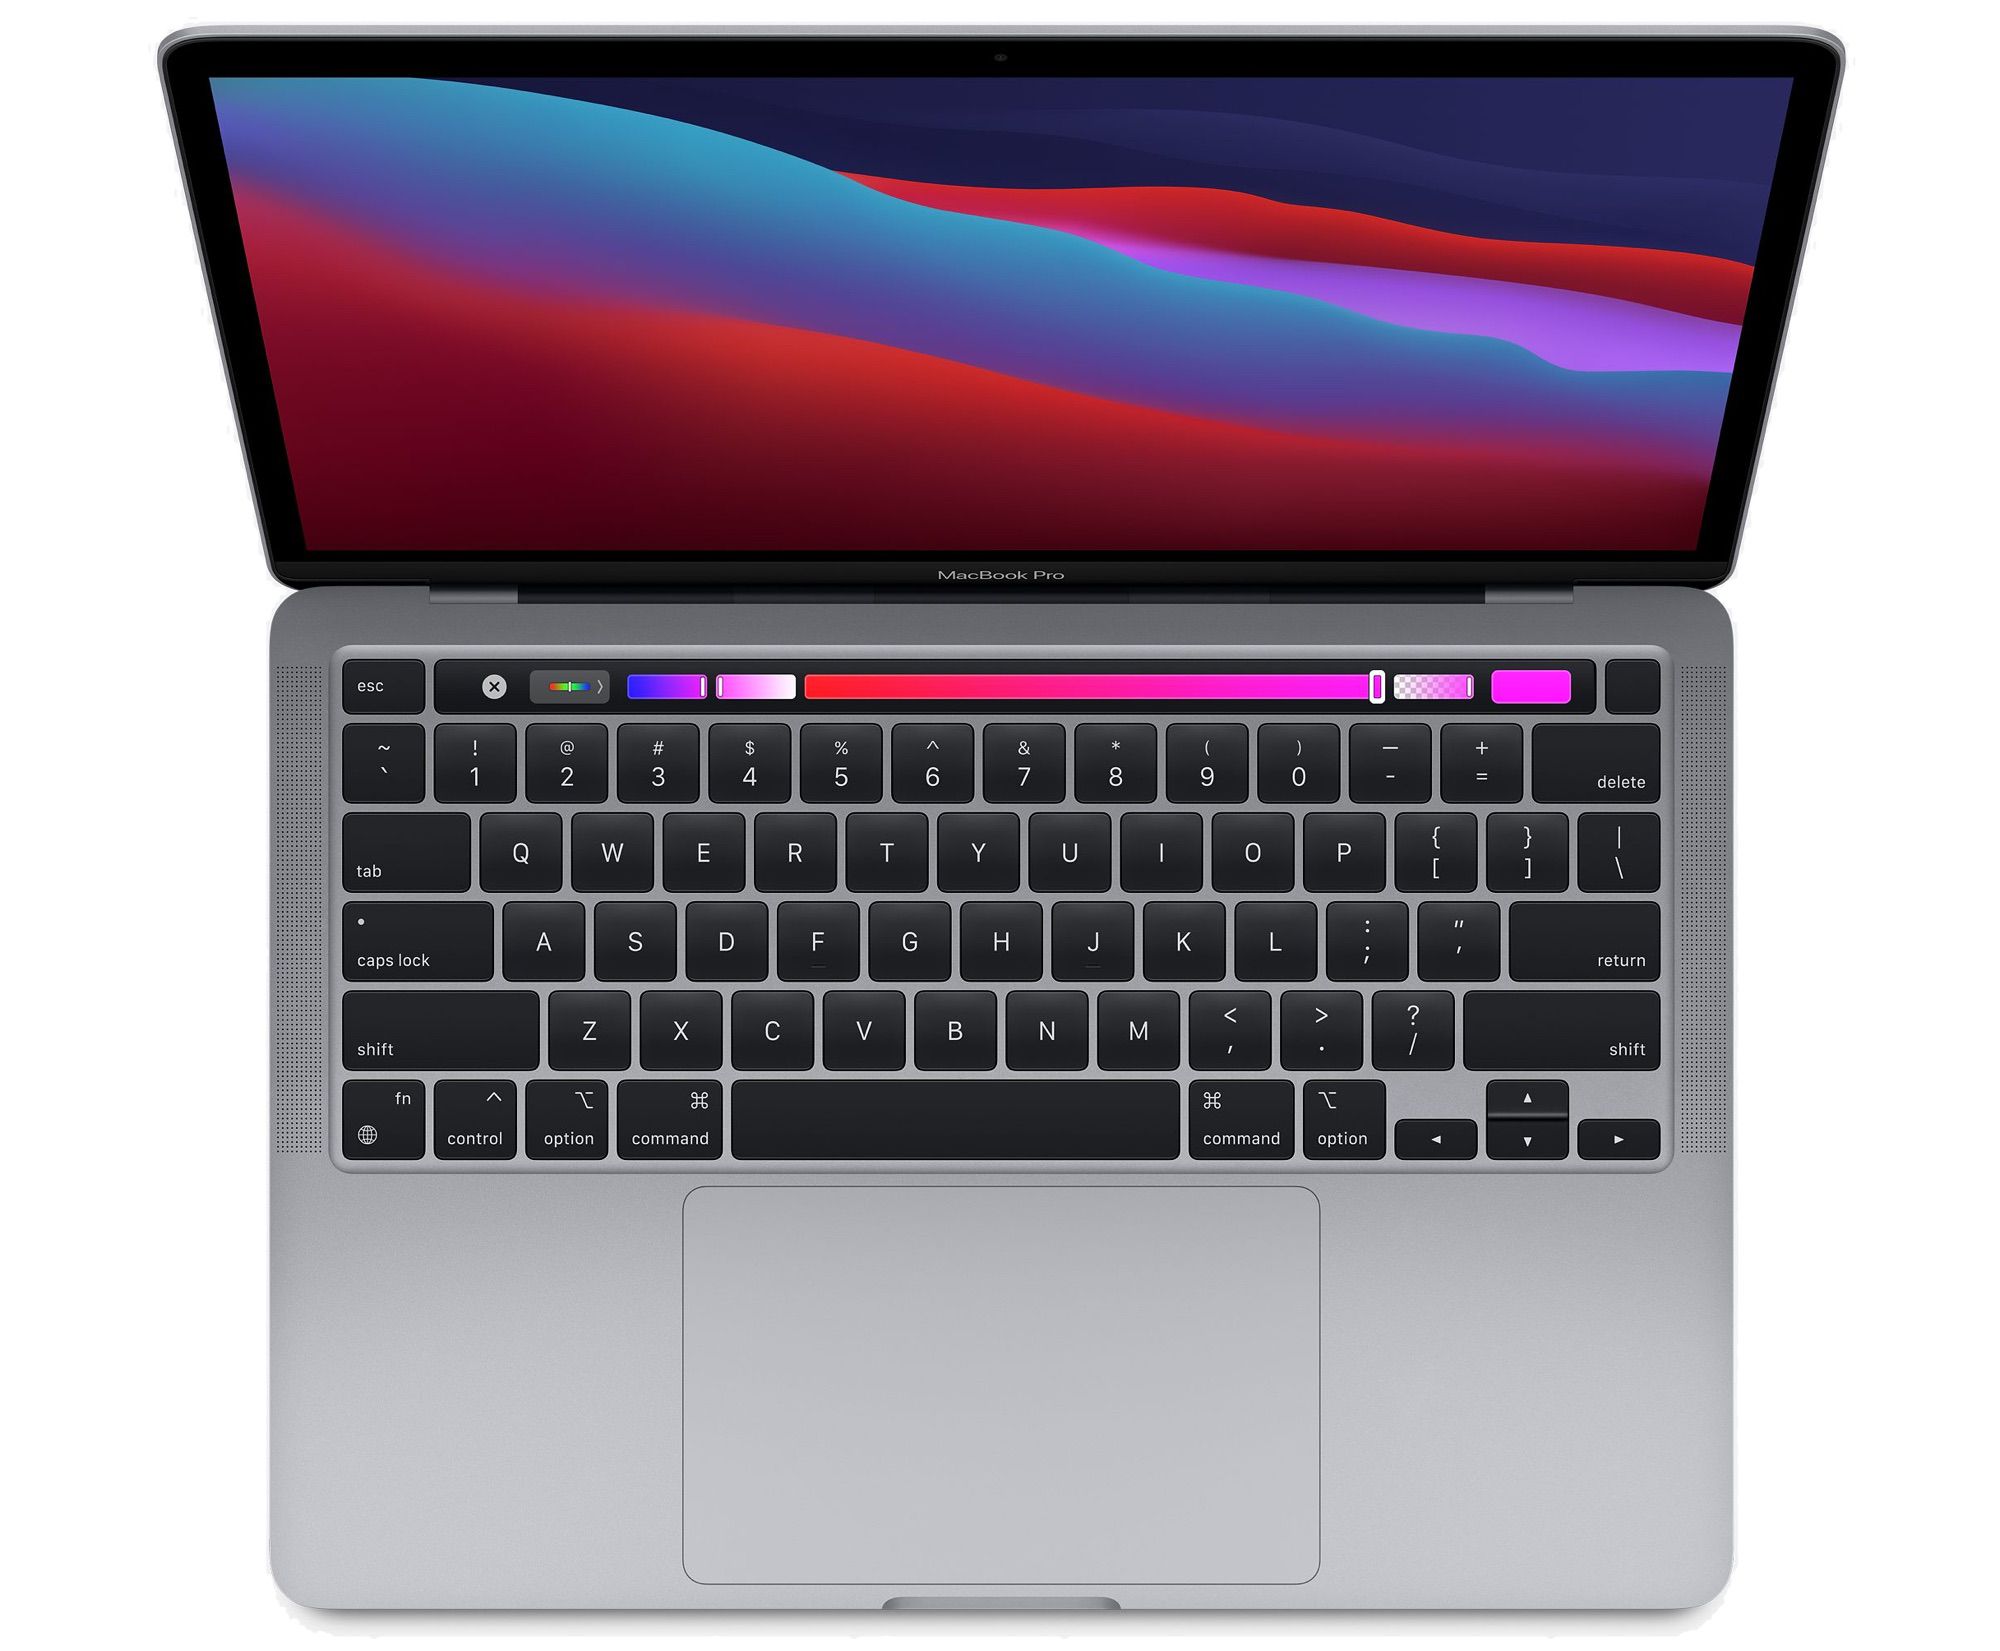 macbook pro cpu upgrade worth it reddit